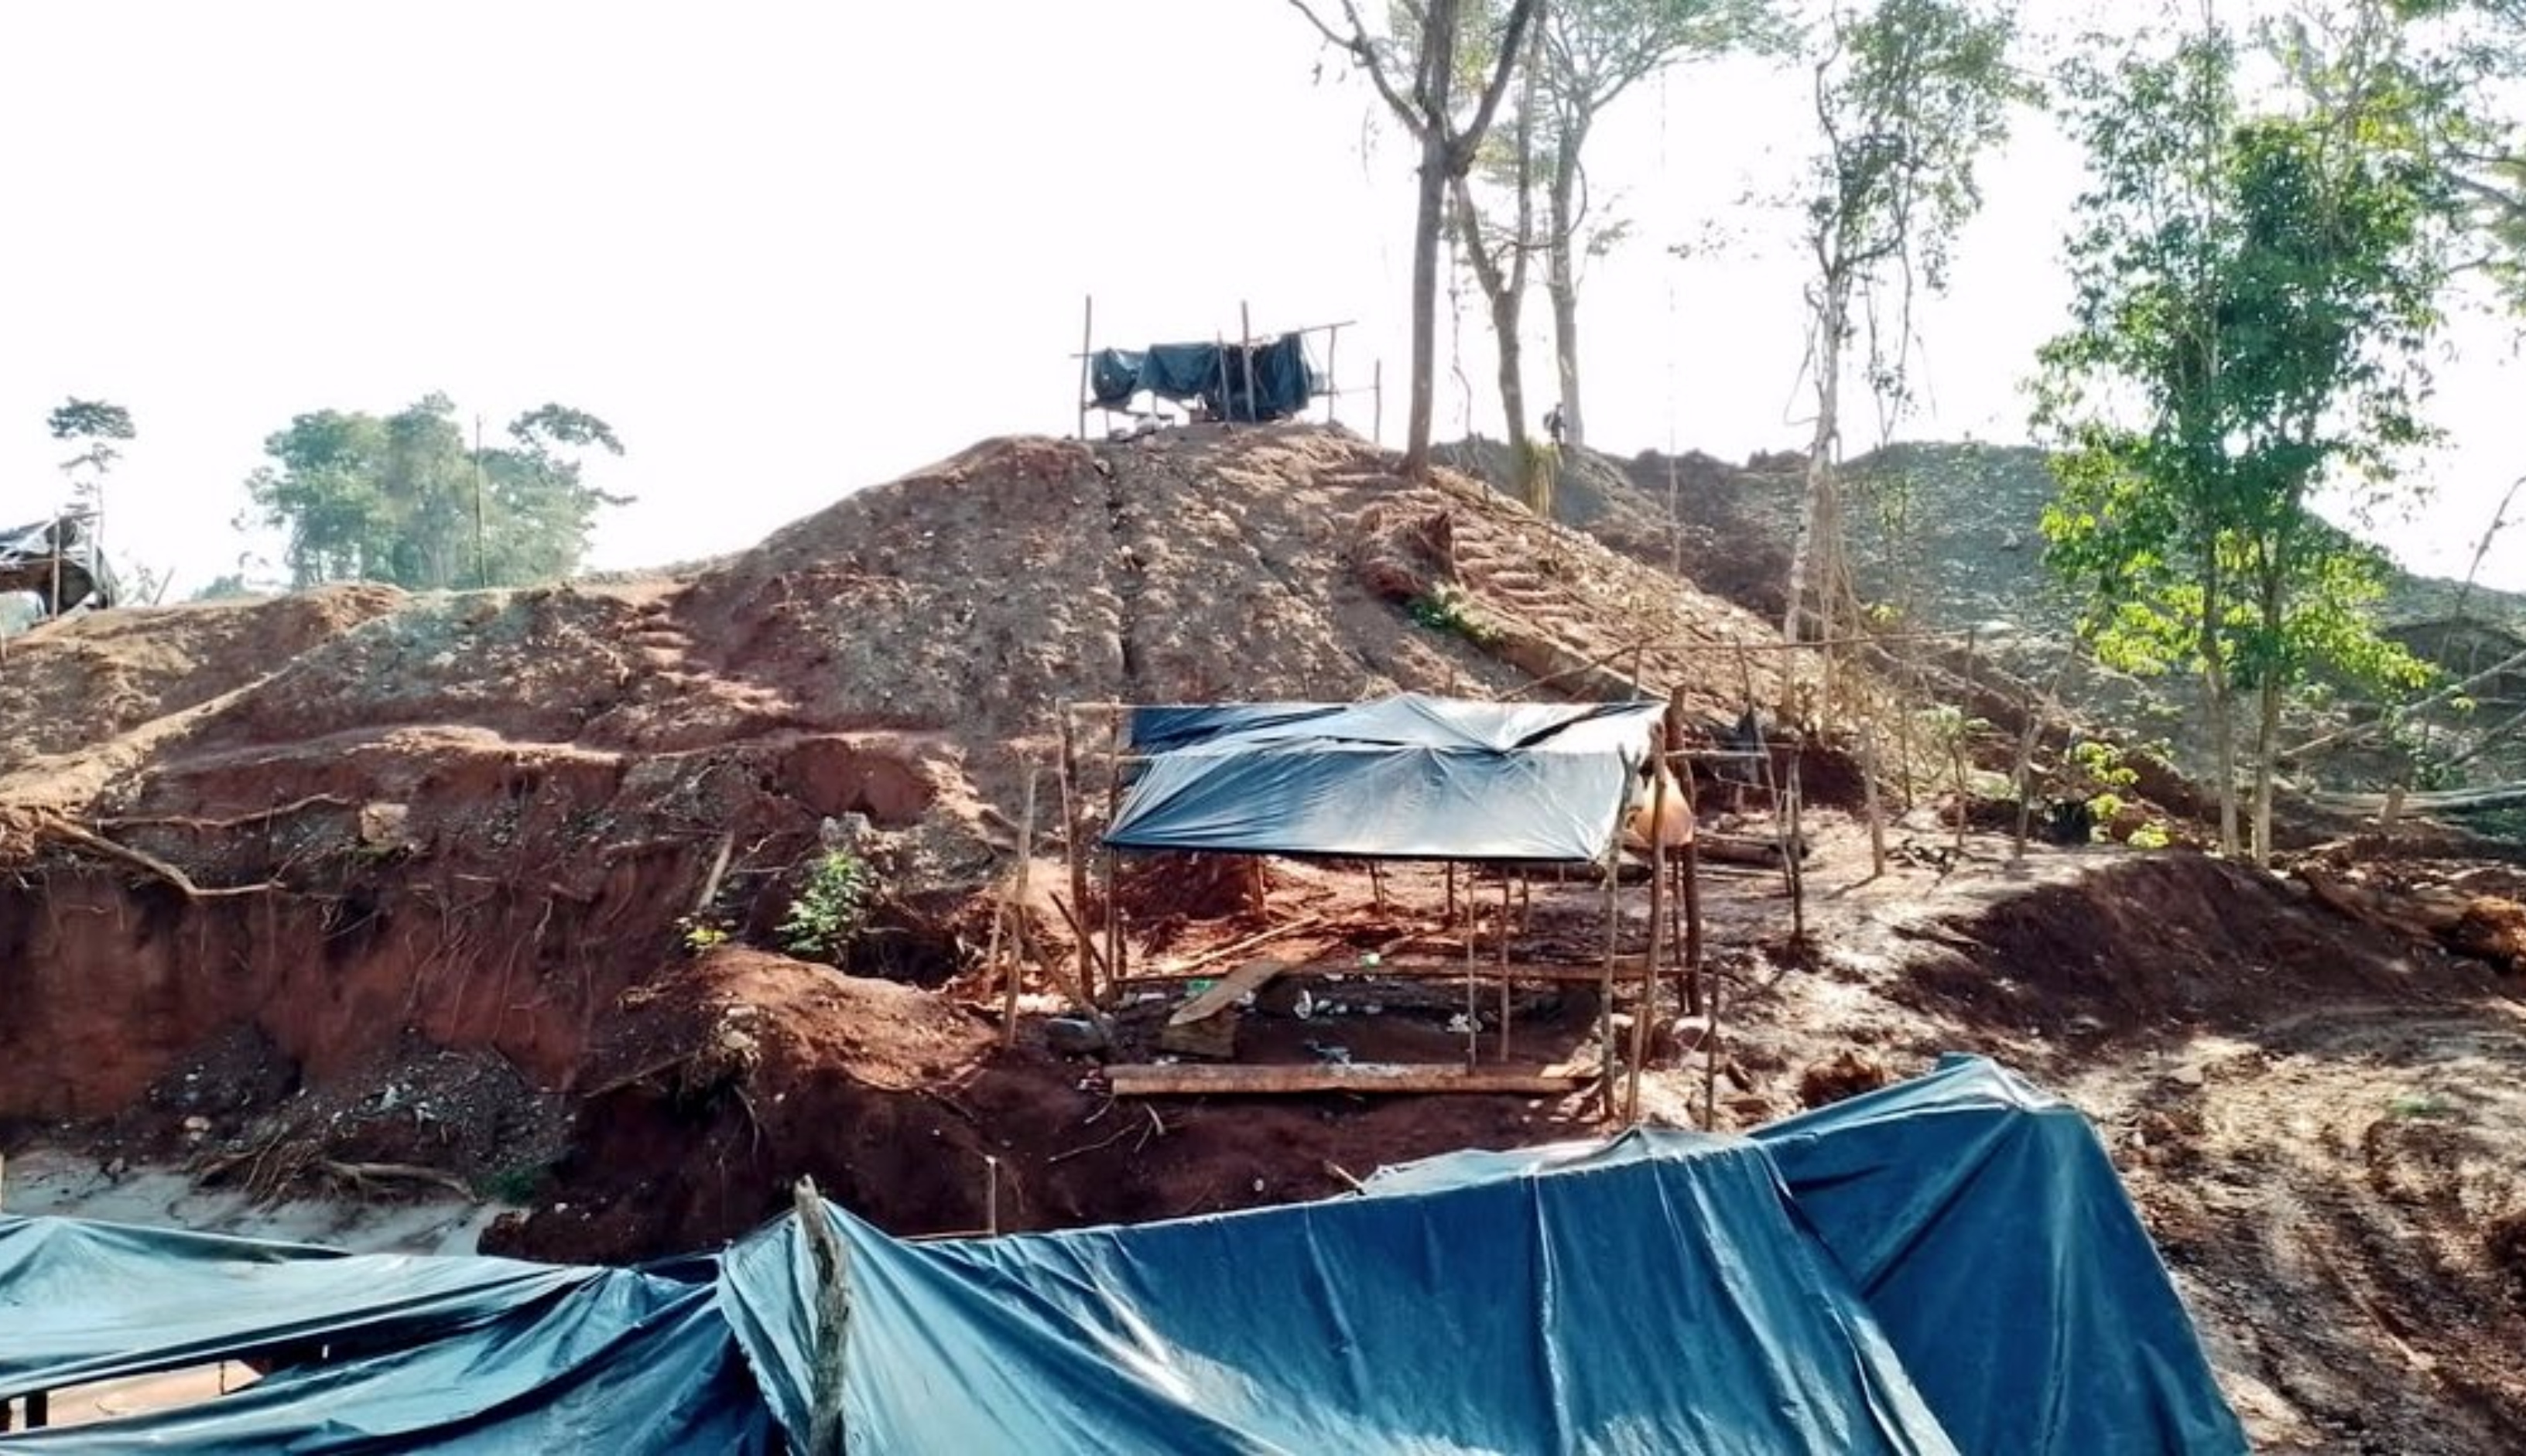 El 15 de diciembre de 2022 las autoridades llevaron a cabo un operativo en la aldea Valle Nuevo, Morales Izabal, para capturar a personas vinculadas con la extracción ilegal de jade. (Foto Prensa Libre: Hemeroteca PL).